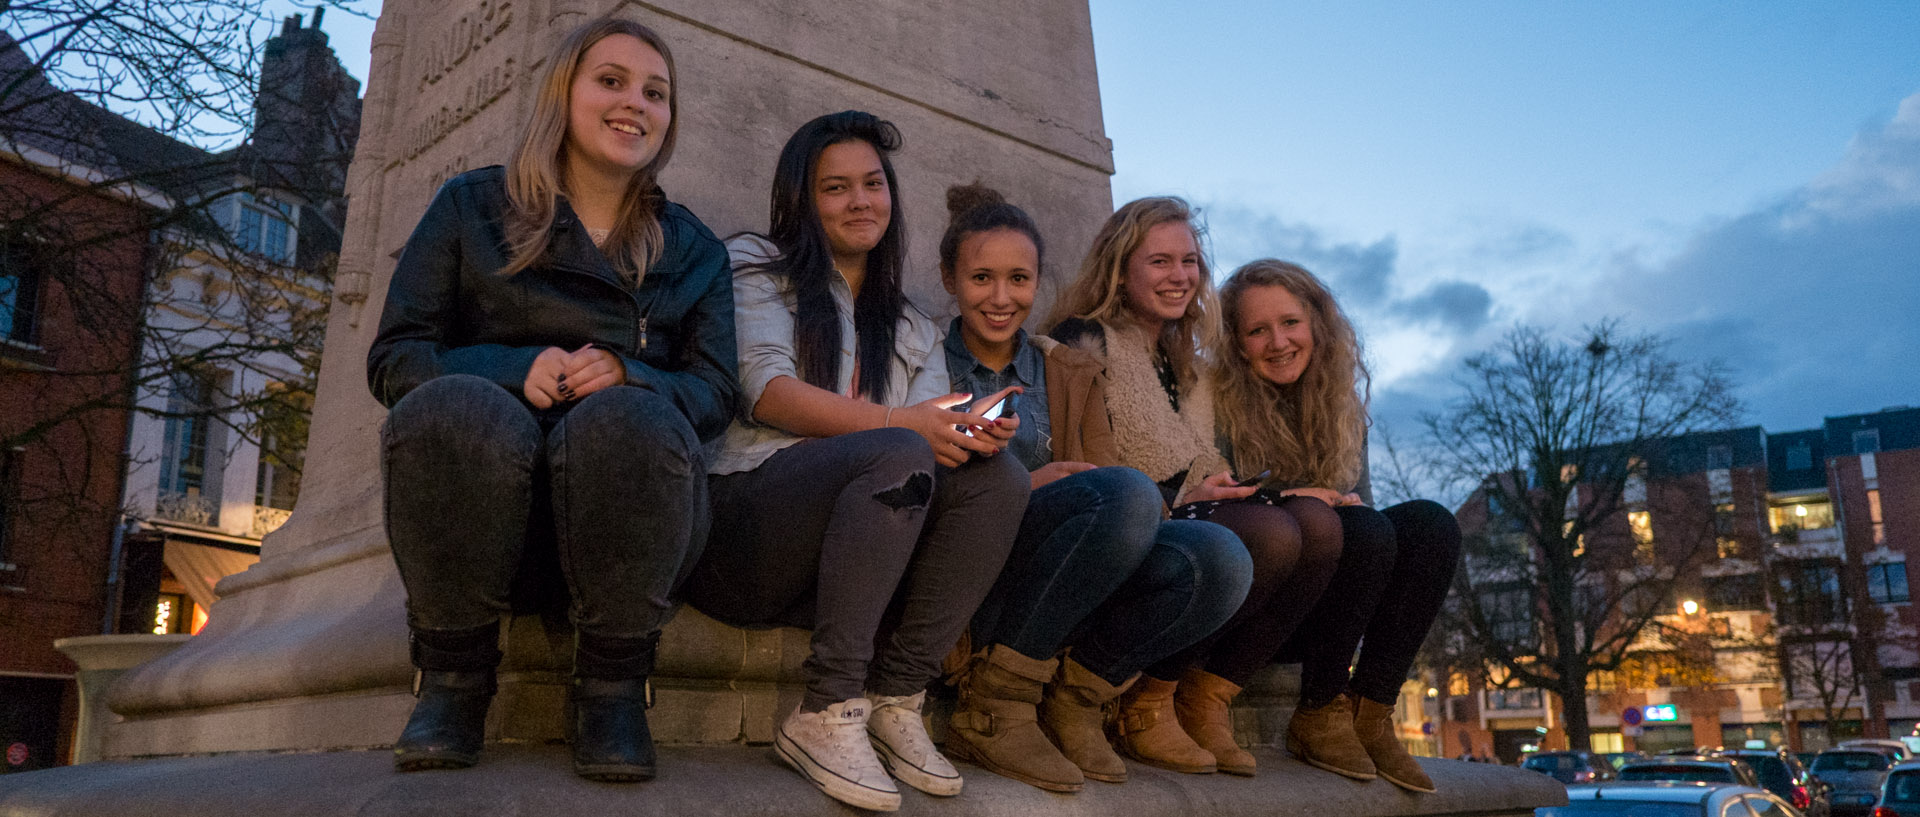 Jeunes filles assises sur le socle de la statue de François André-Bonte, ancien maire de Lille, place du Concert, à Lille.